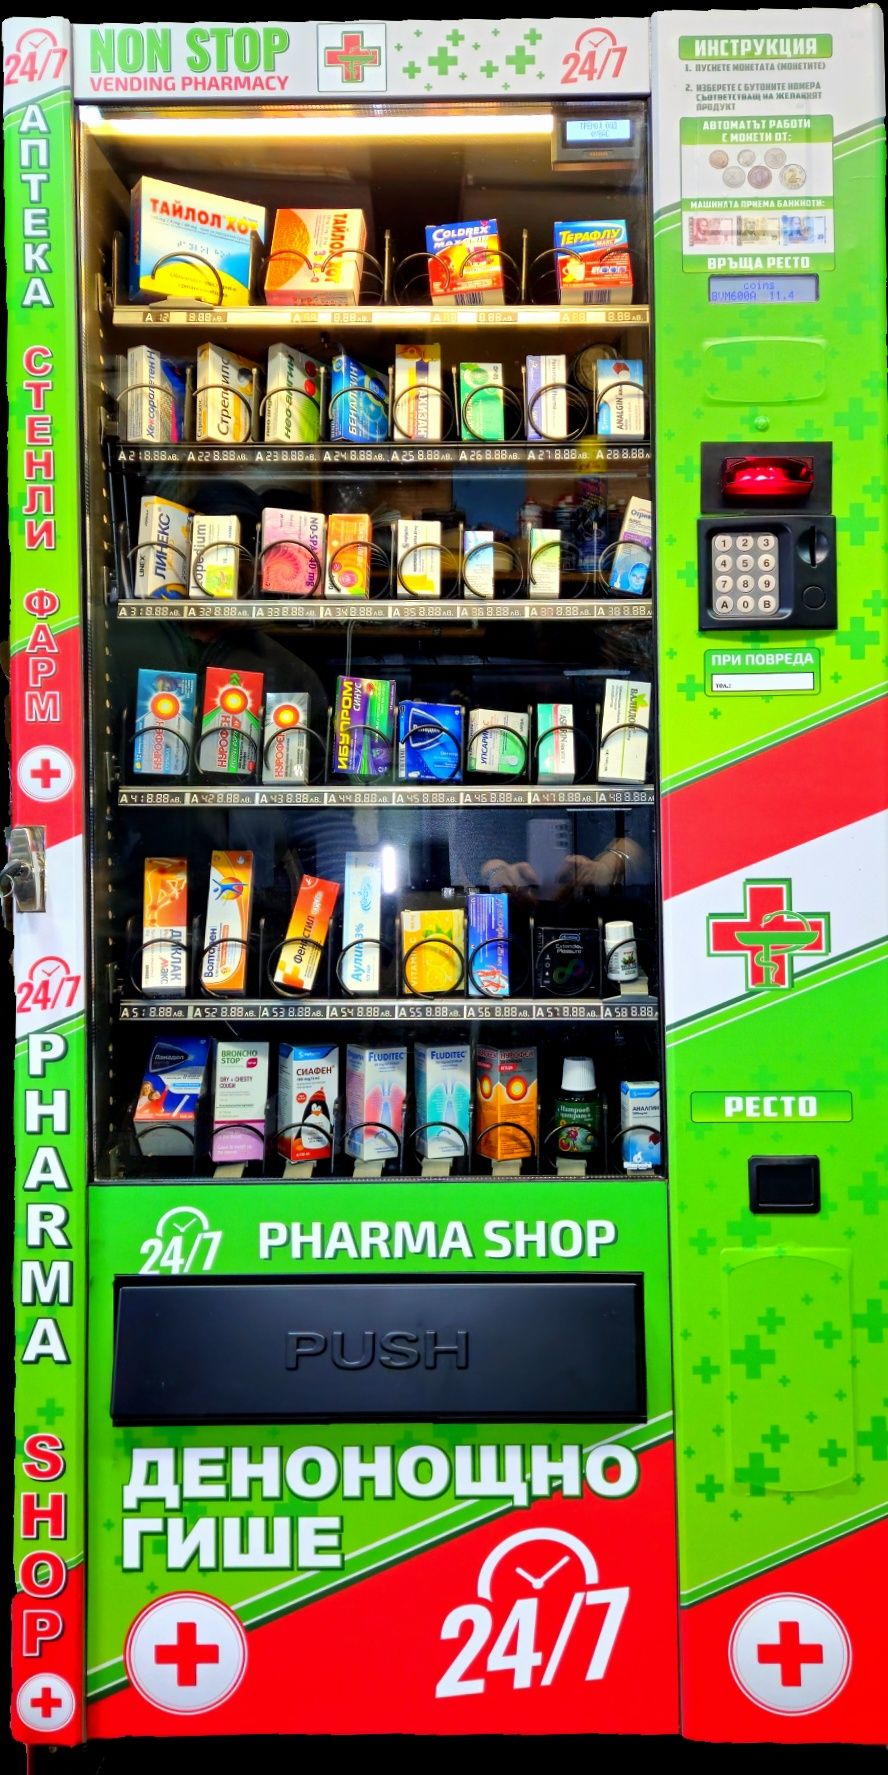 Вендинг автомат за фармацевтични продукти /аптека /дрогерия/ лекарства